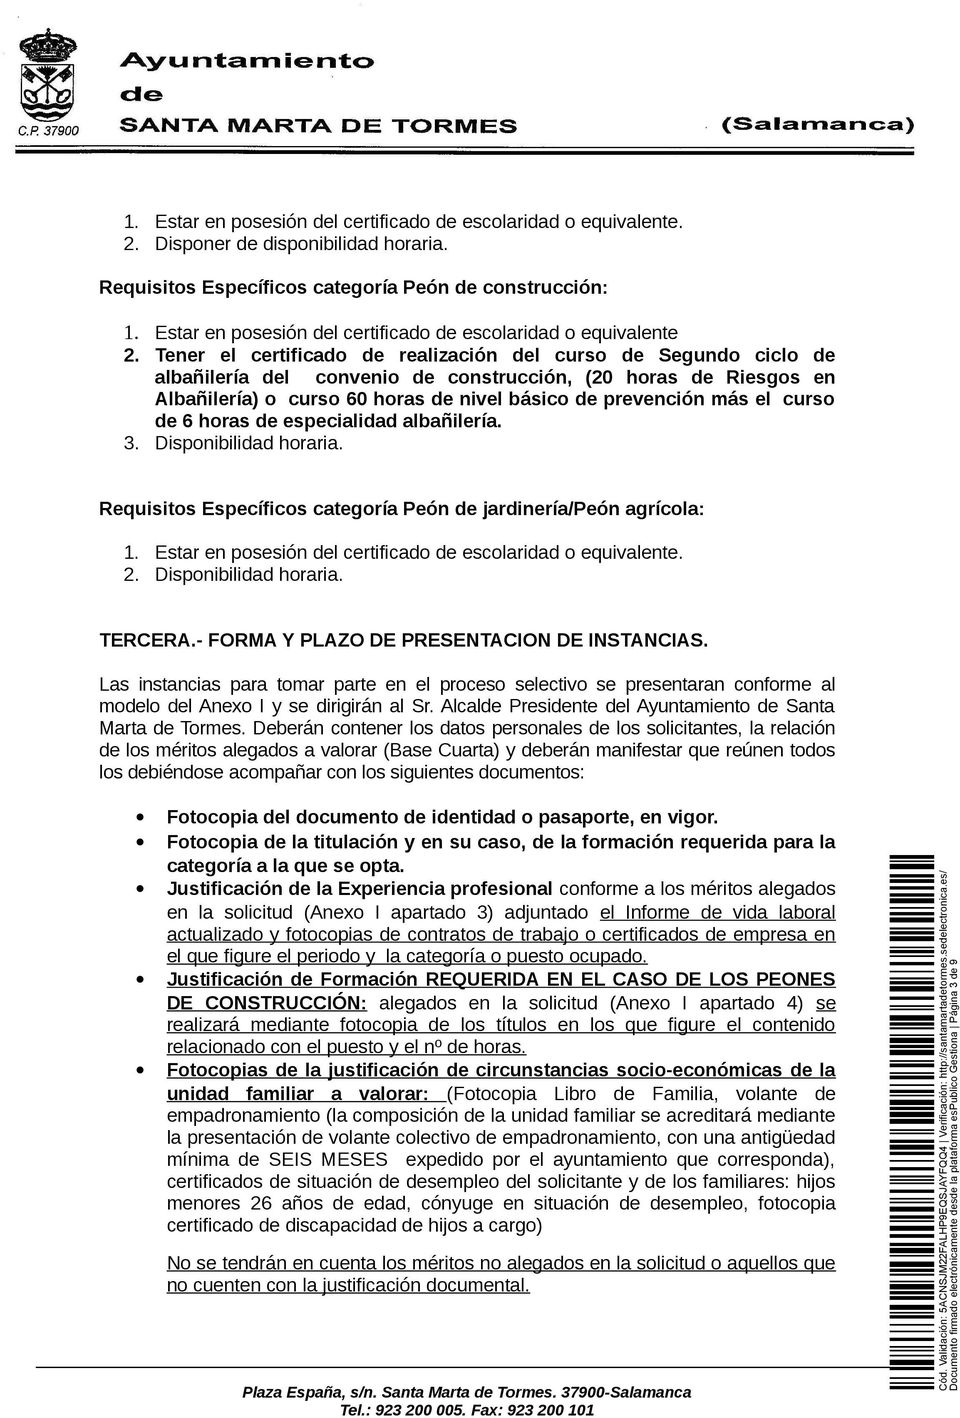 Tener el certificado de realización del curso de Segundo ciclo de albañilería del convenio de construcción, (20 horas de Riesgos en Albañilería) o curso 60 horas de nivel básico de prevención más el